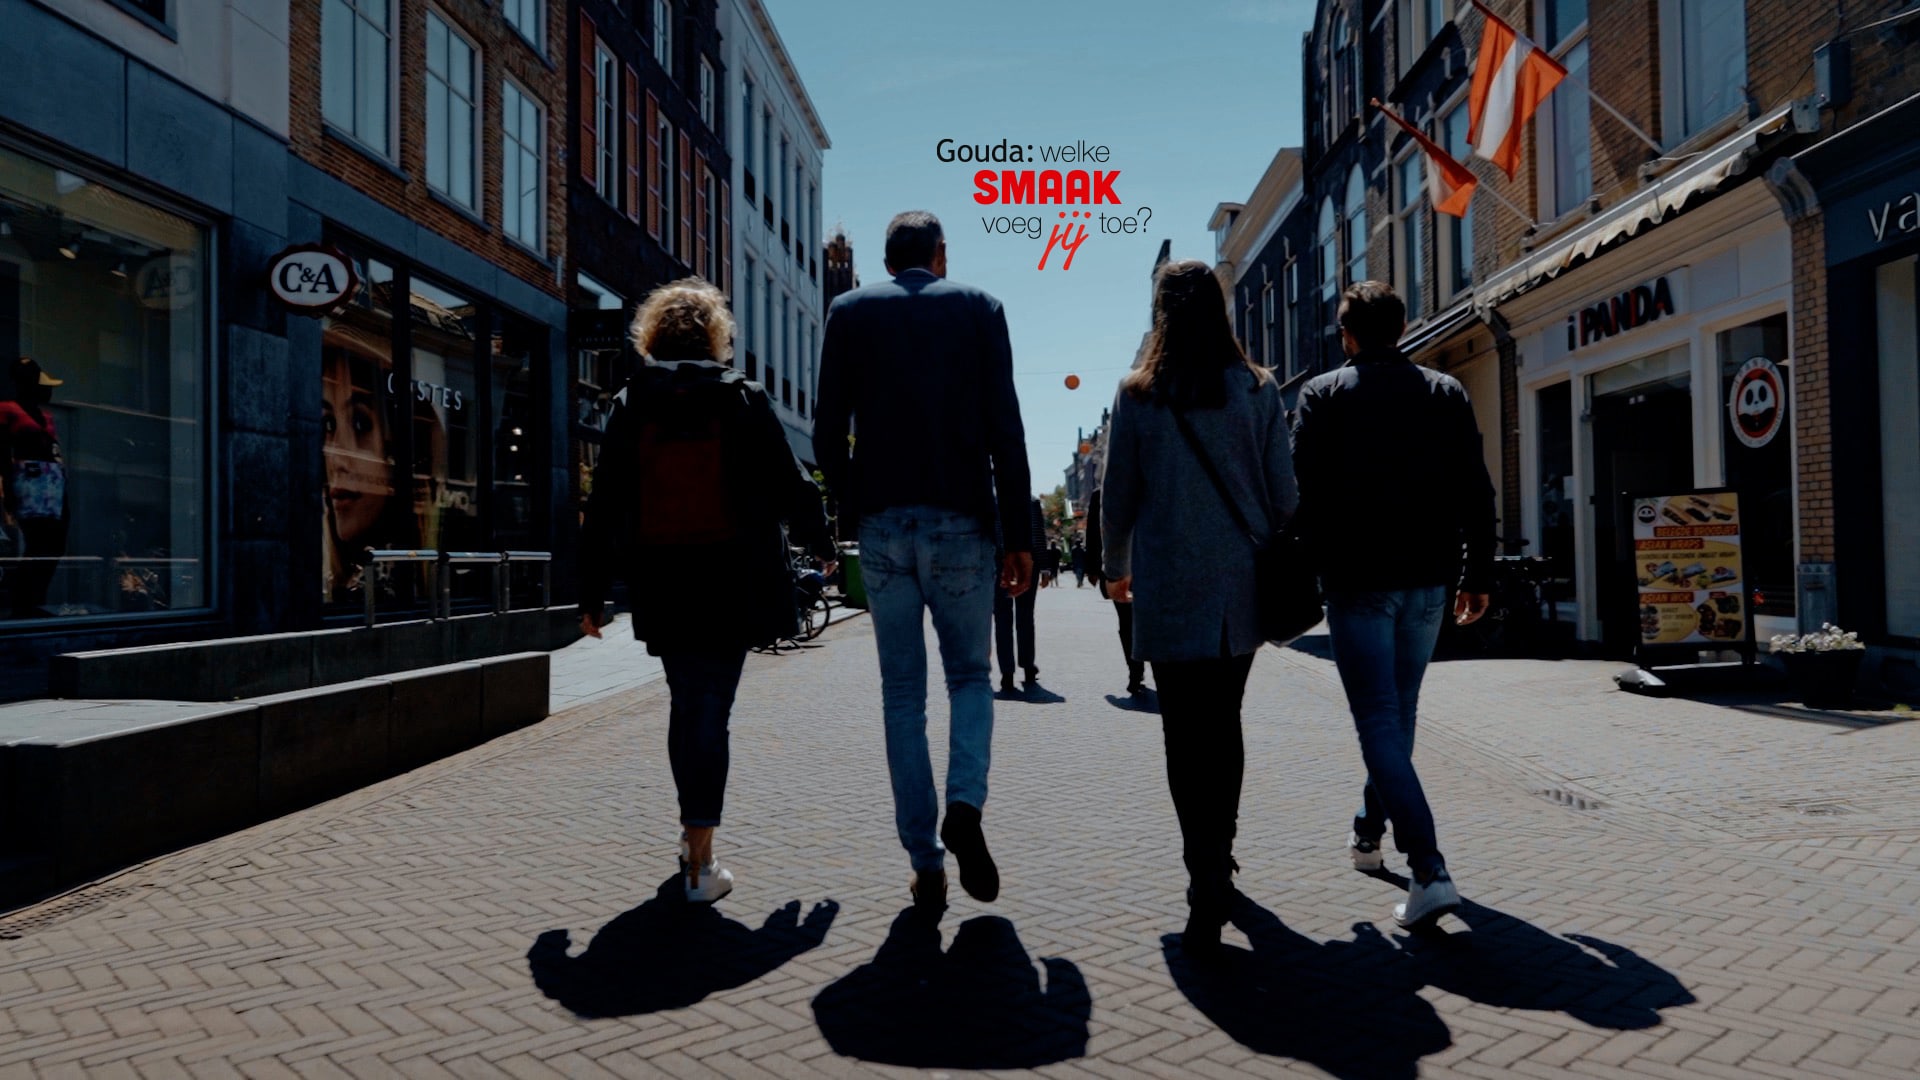 Op de foto staan 4 collega's met hun rug naar het beeld die in de binnenstad van Gouda lopen. In het midden het logo Gouda: welke smaak voeg jij toe?